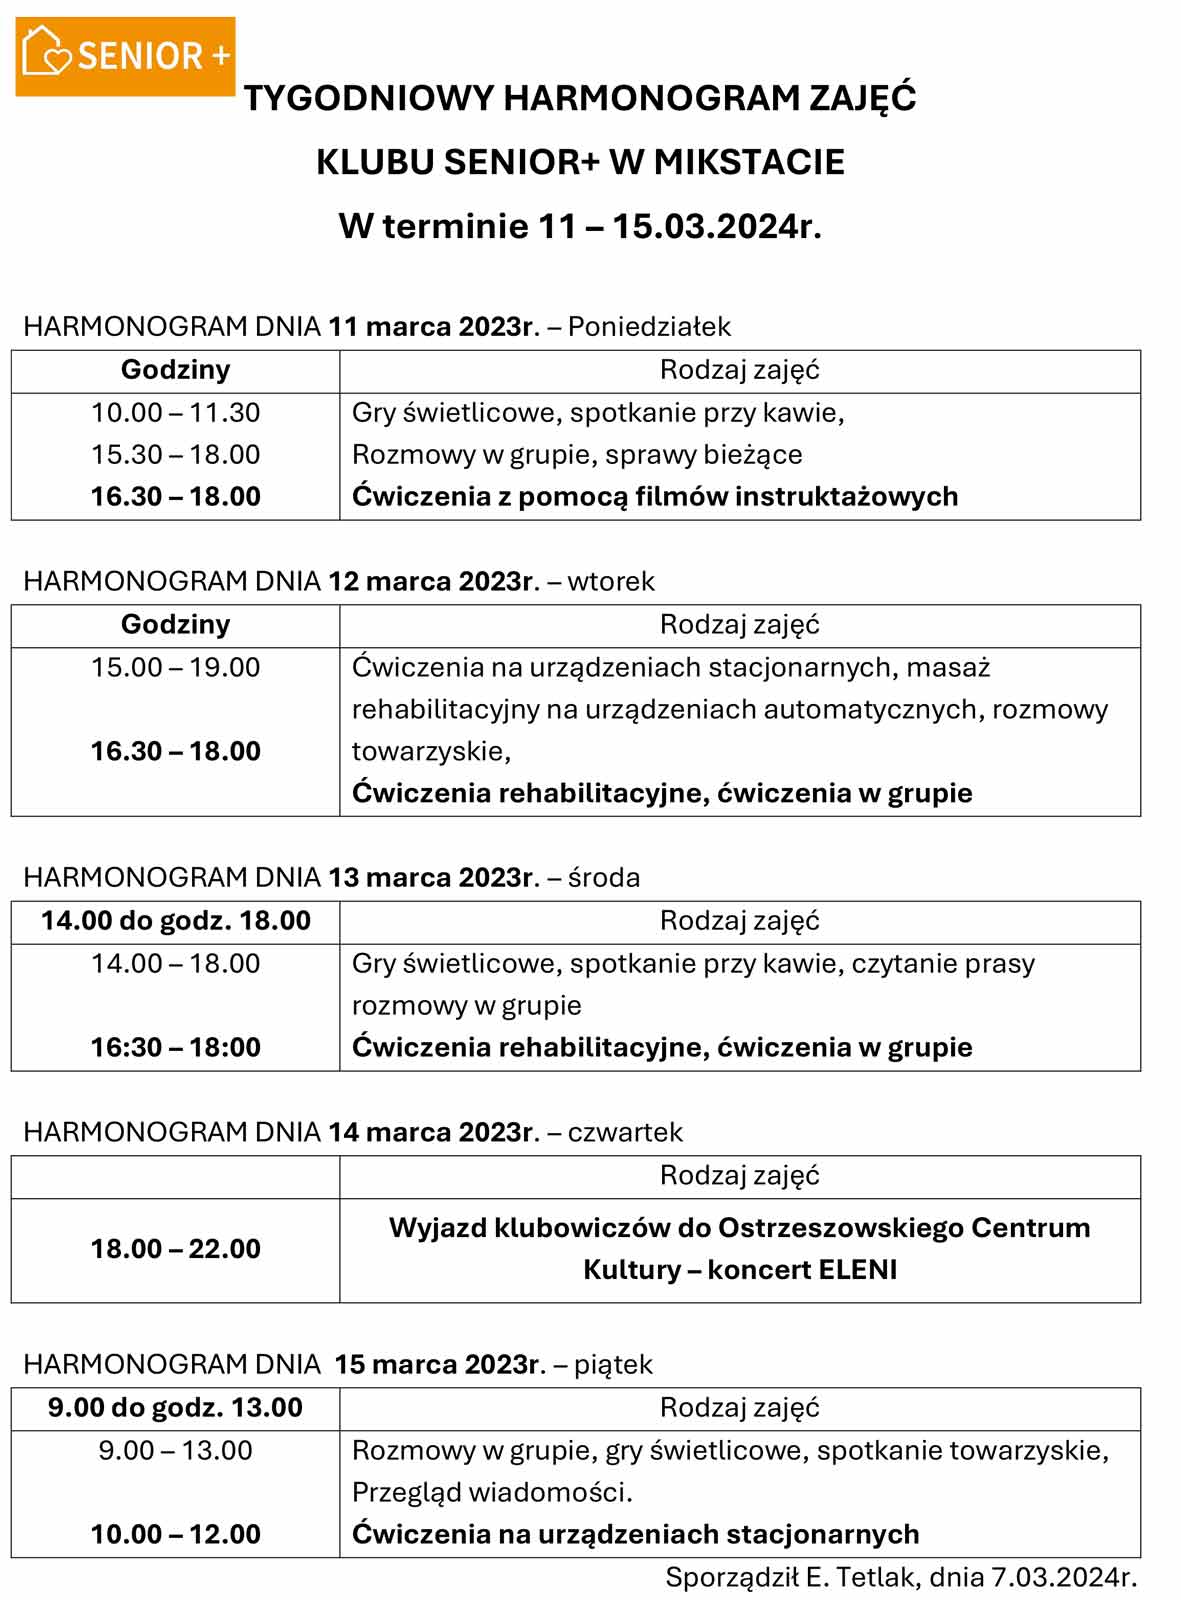 TYGODNIOWY HARMONOGRAM ZAJĘĆ KLUBU SENIOR+ W MIKSTACIE W terminie 11 – 15.03.2024r.